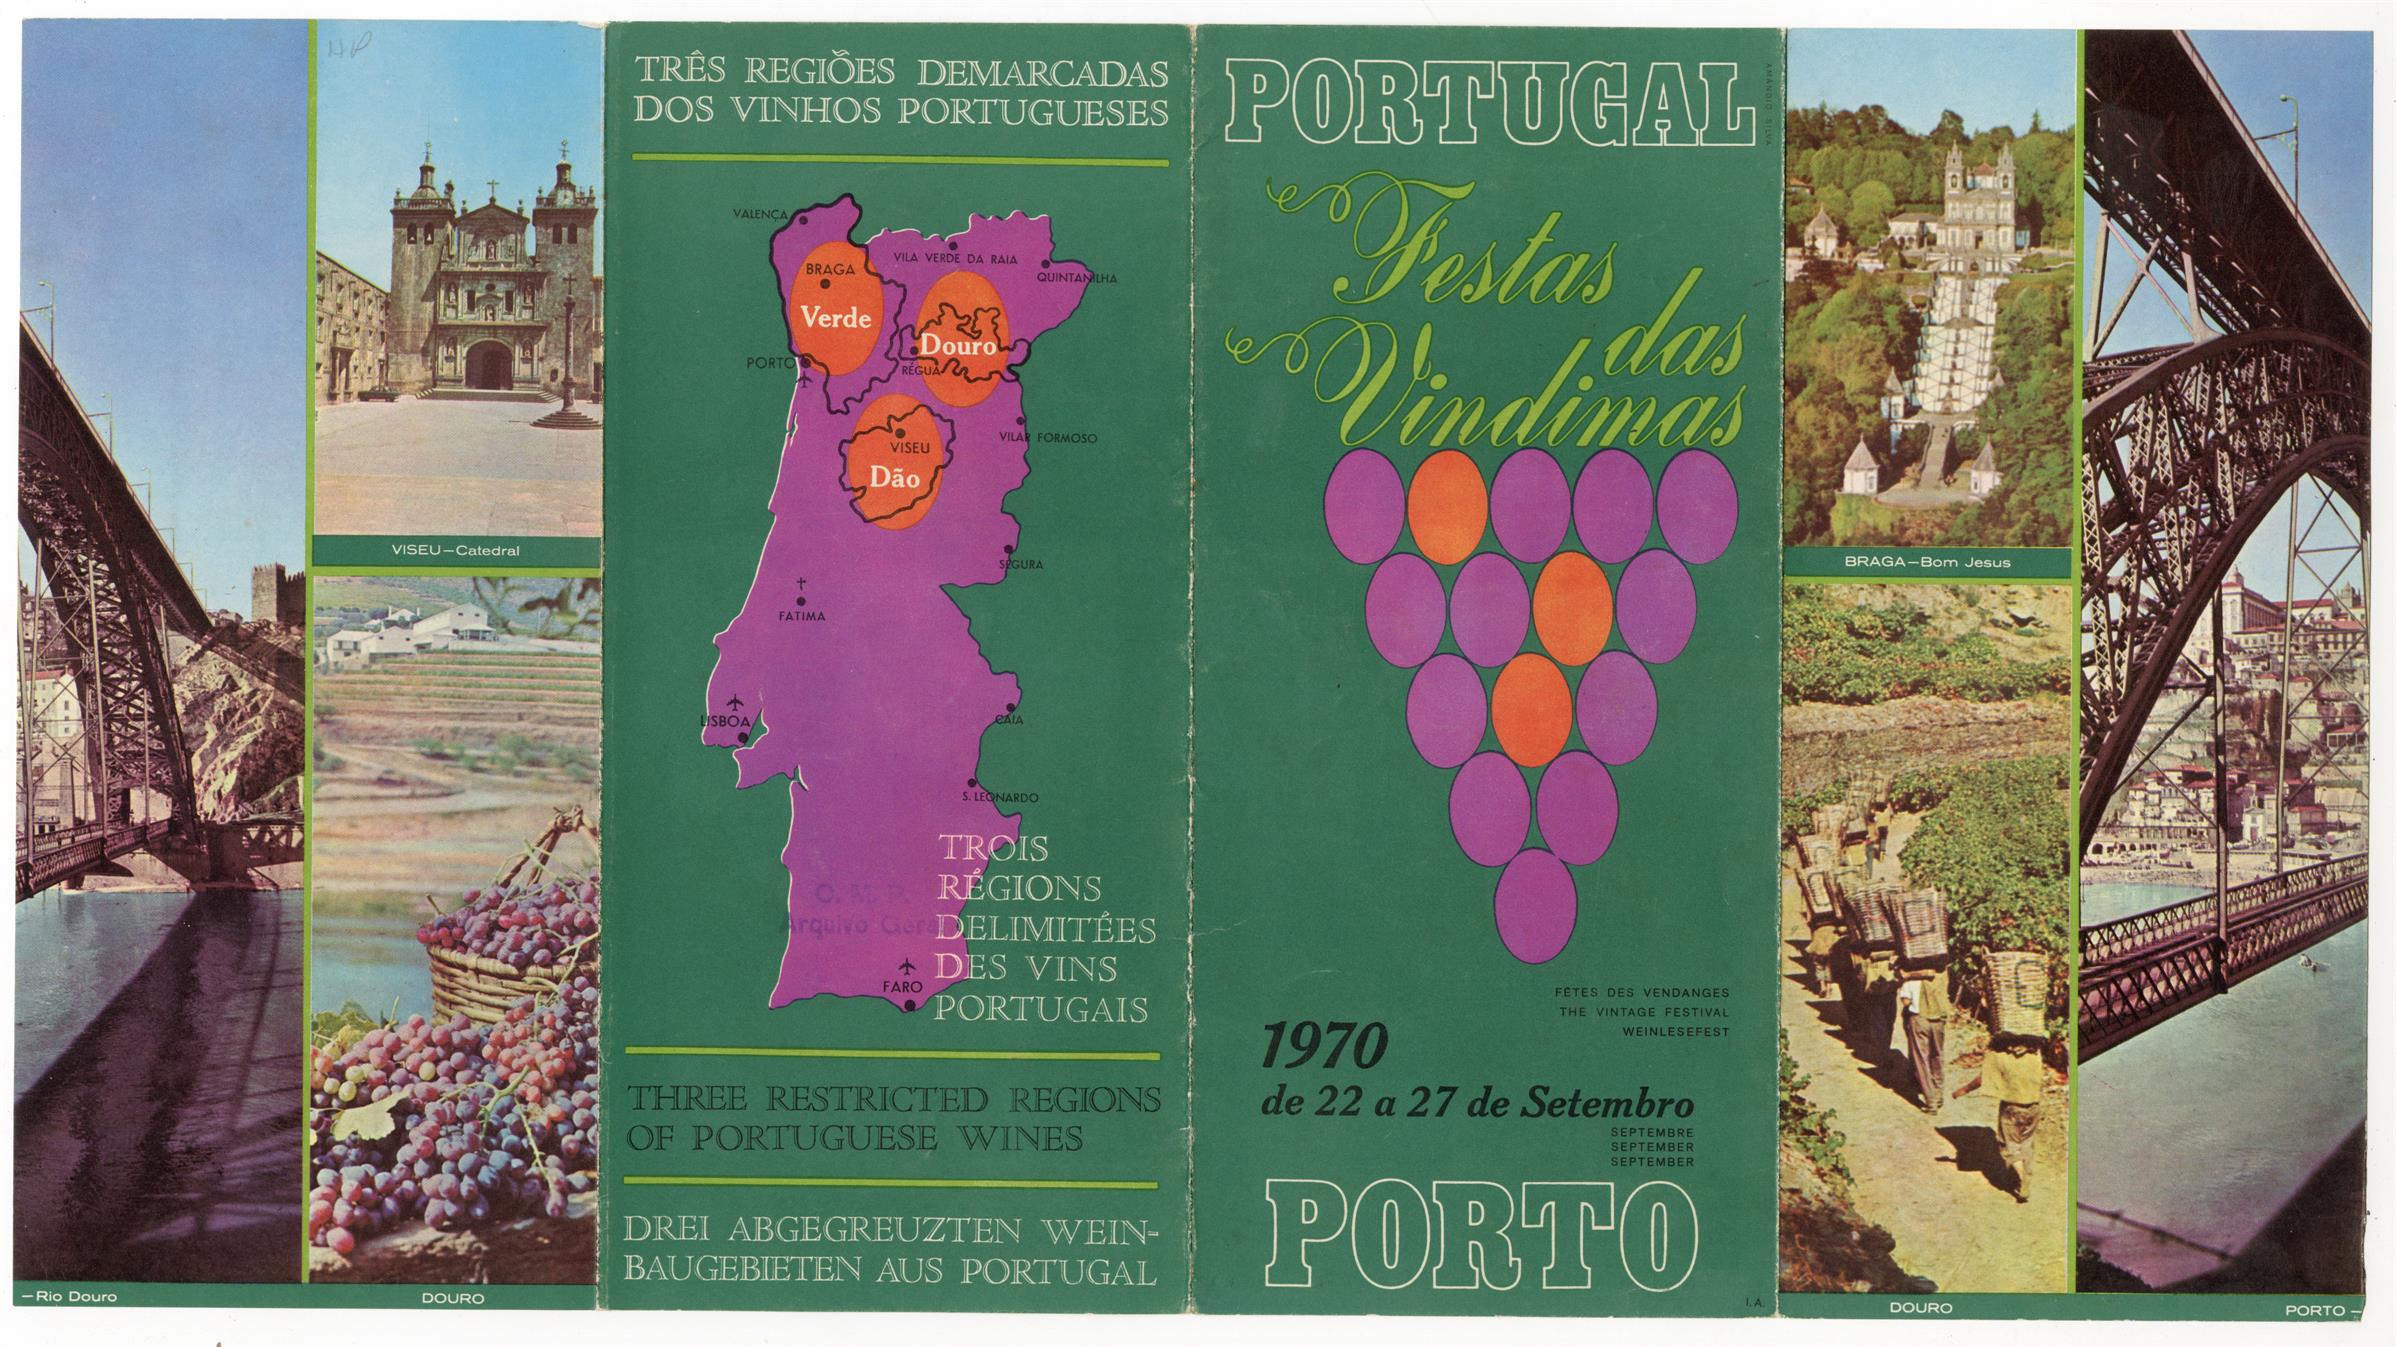 Portugal: festas das vindimas